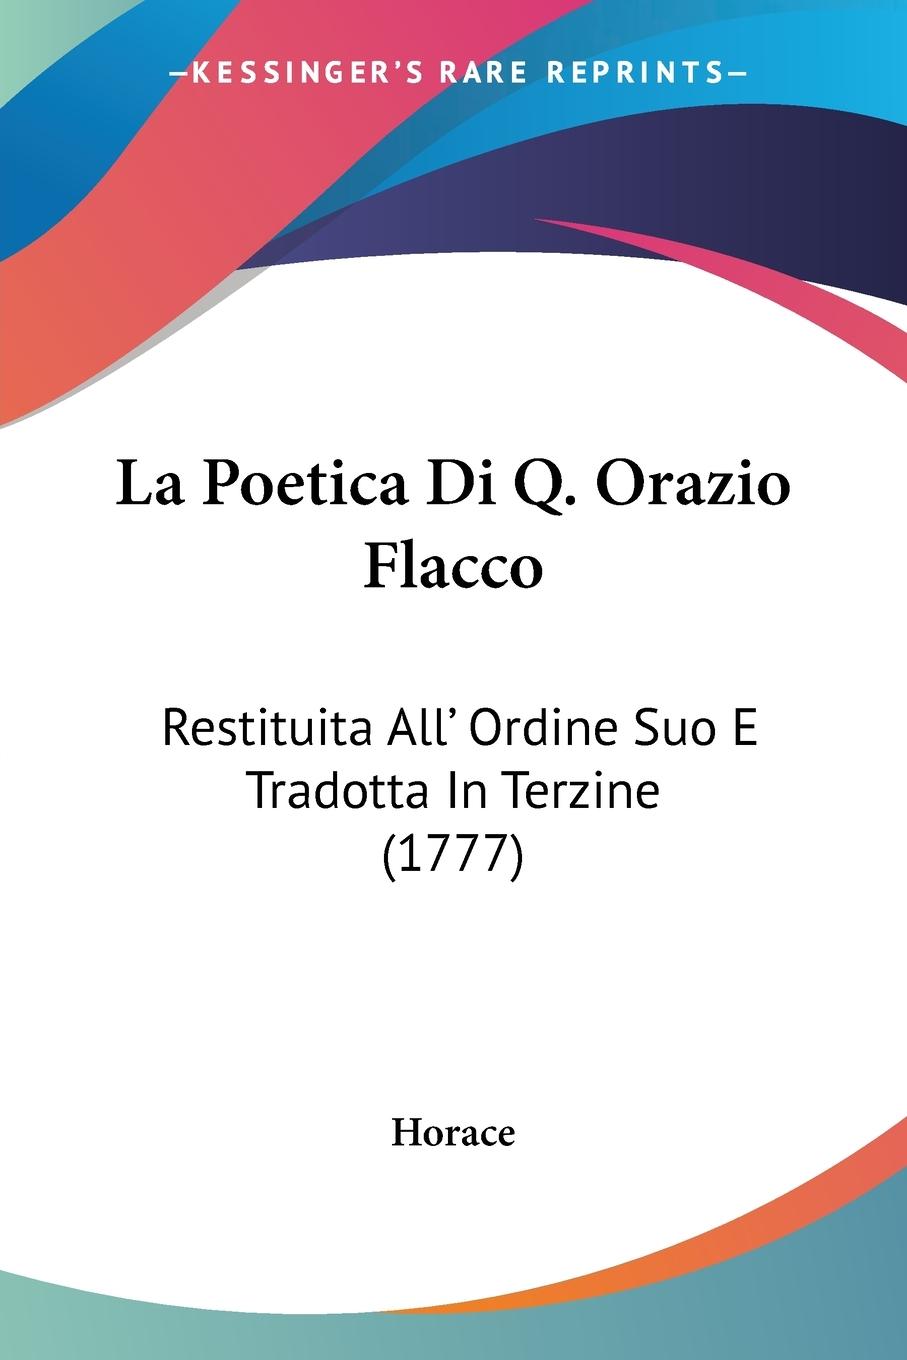 La Poetica Di Q. Orazio Flacco - Horace